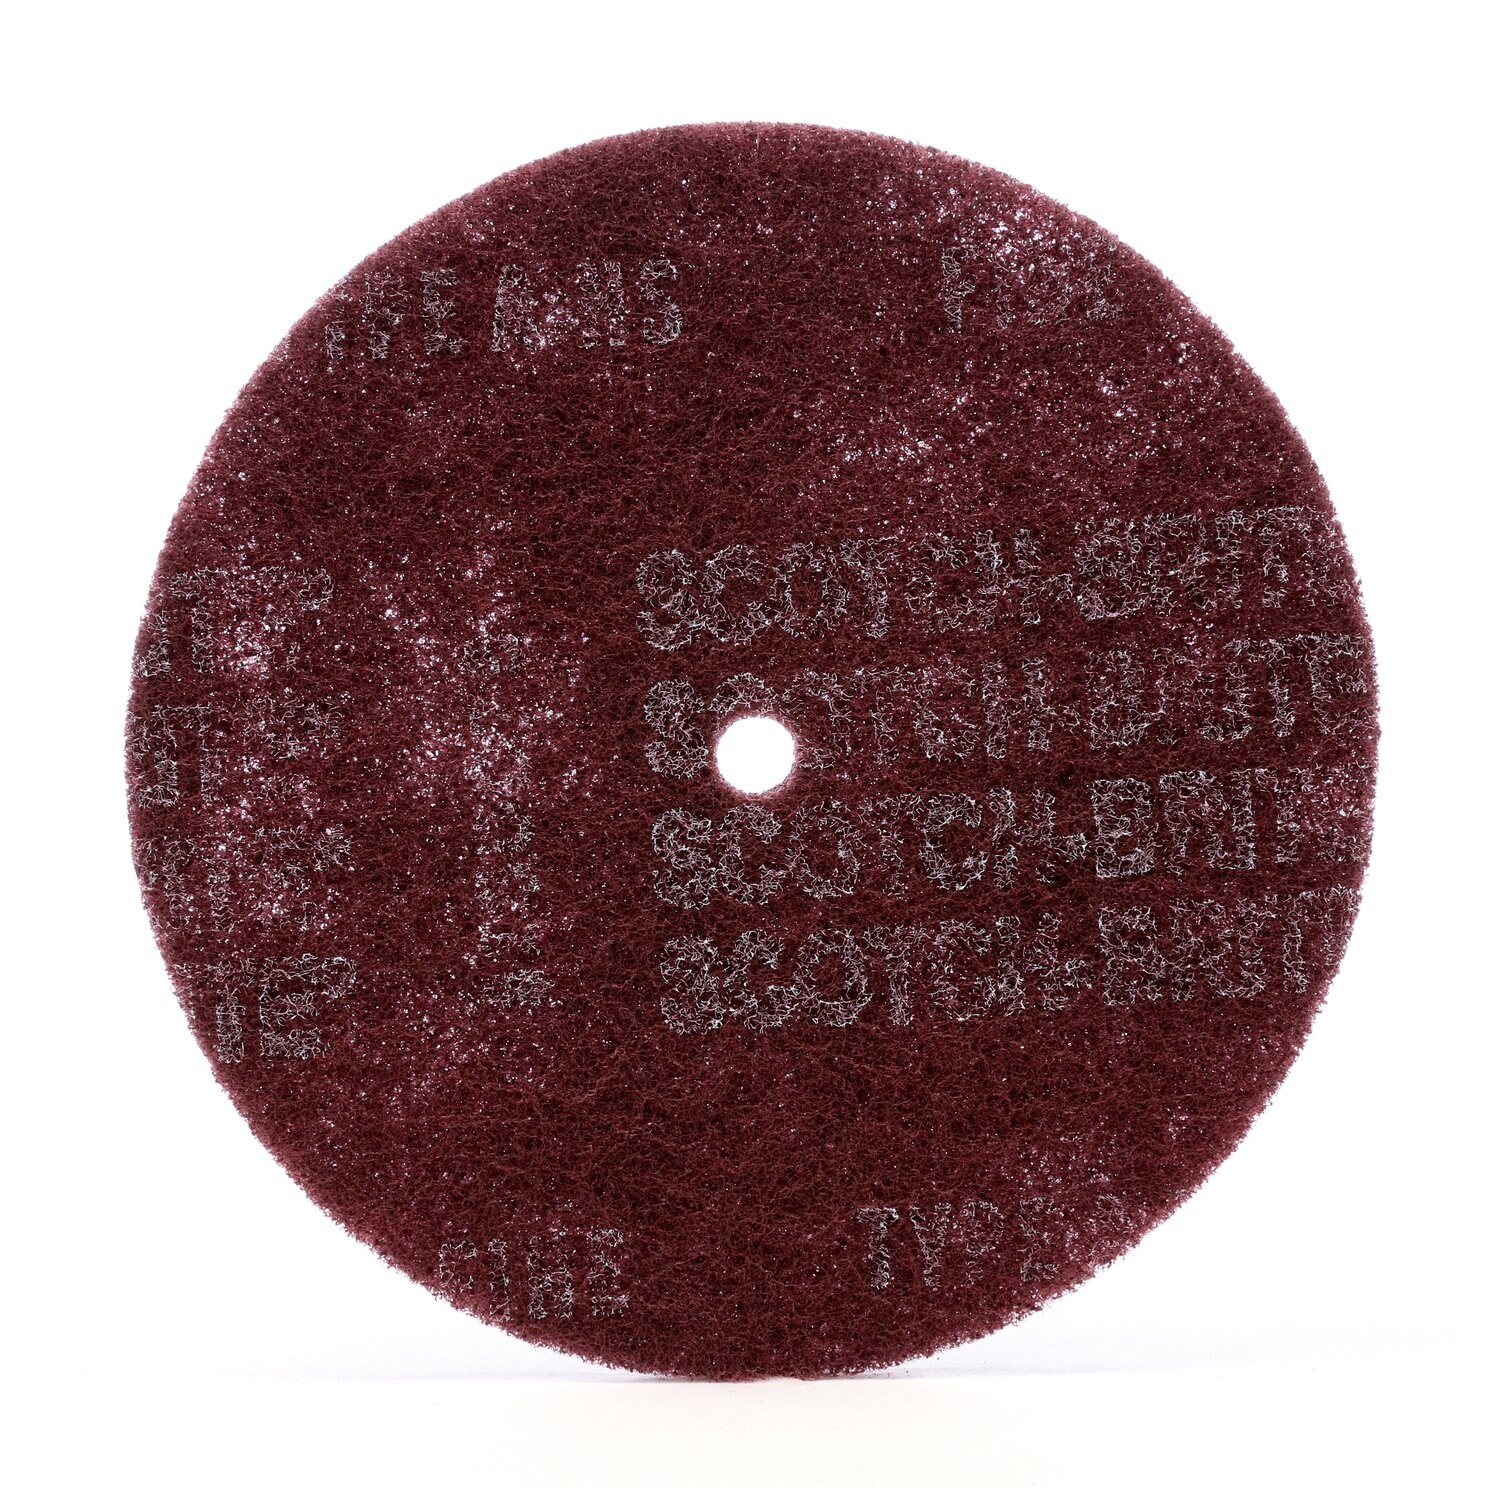 7000120949 - Scotch-Brite High Strength Disc, HS-DC, A/O Medium, 6 in x 1/2 in, 100
ea/Case